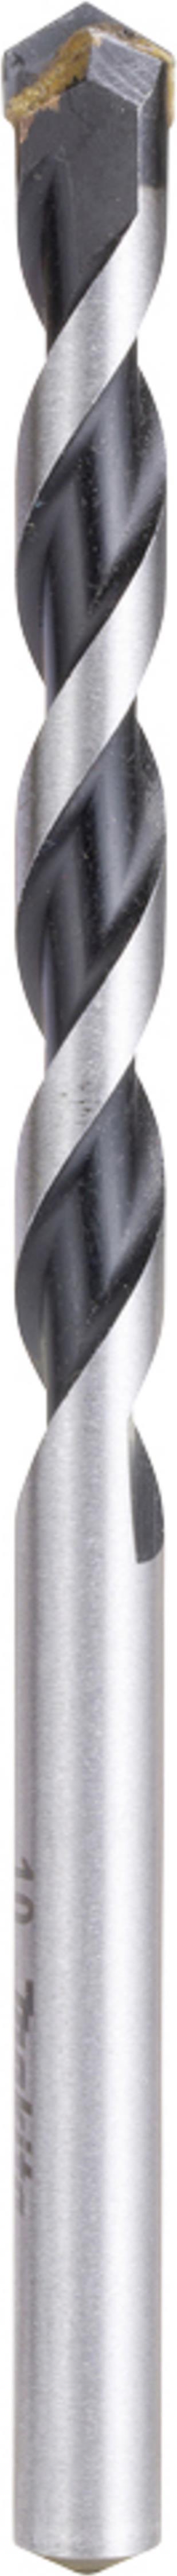 Makita E-11069 Hartmetall Mehrzweckbohrer 1 Stück 10 mm Gesamtlänge 150 mm Schnellspannbohrfutter 1 St. (E-11069)